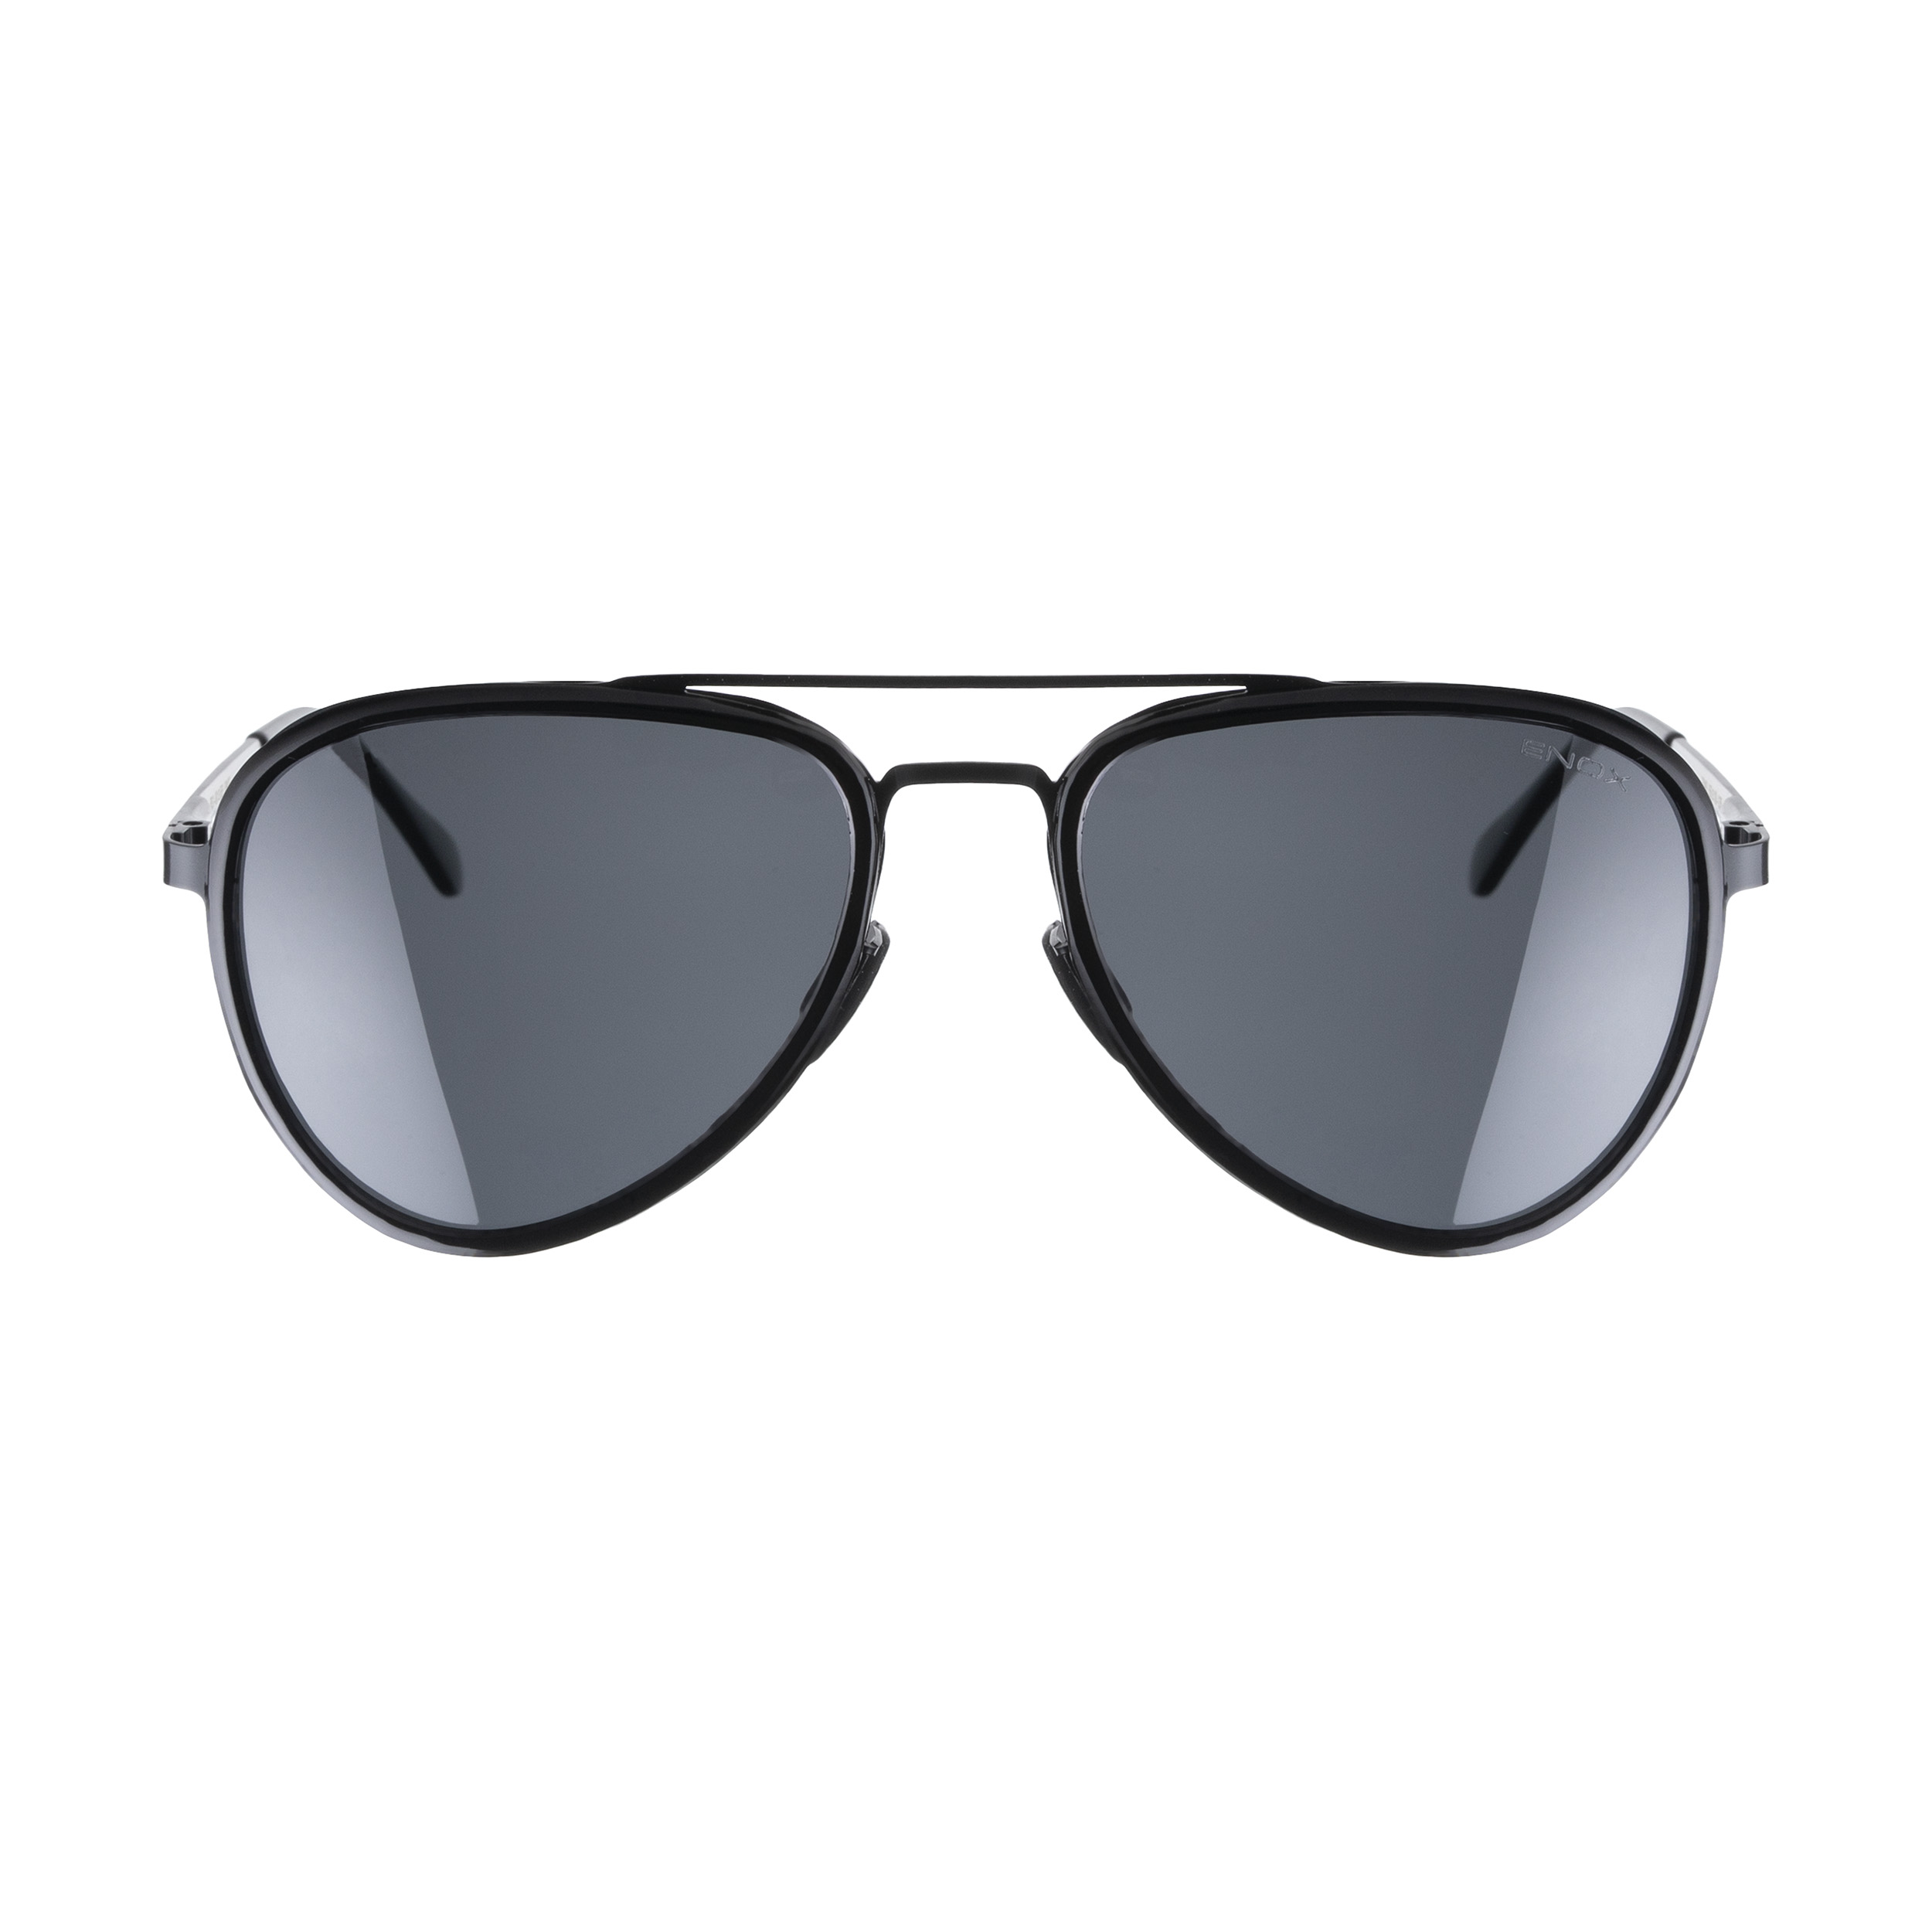 عینک آفتابی مردانه انوکس مدل EE70401